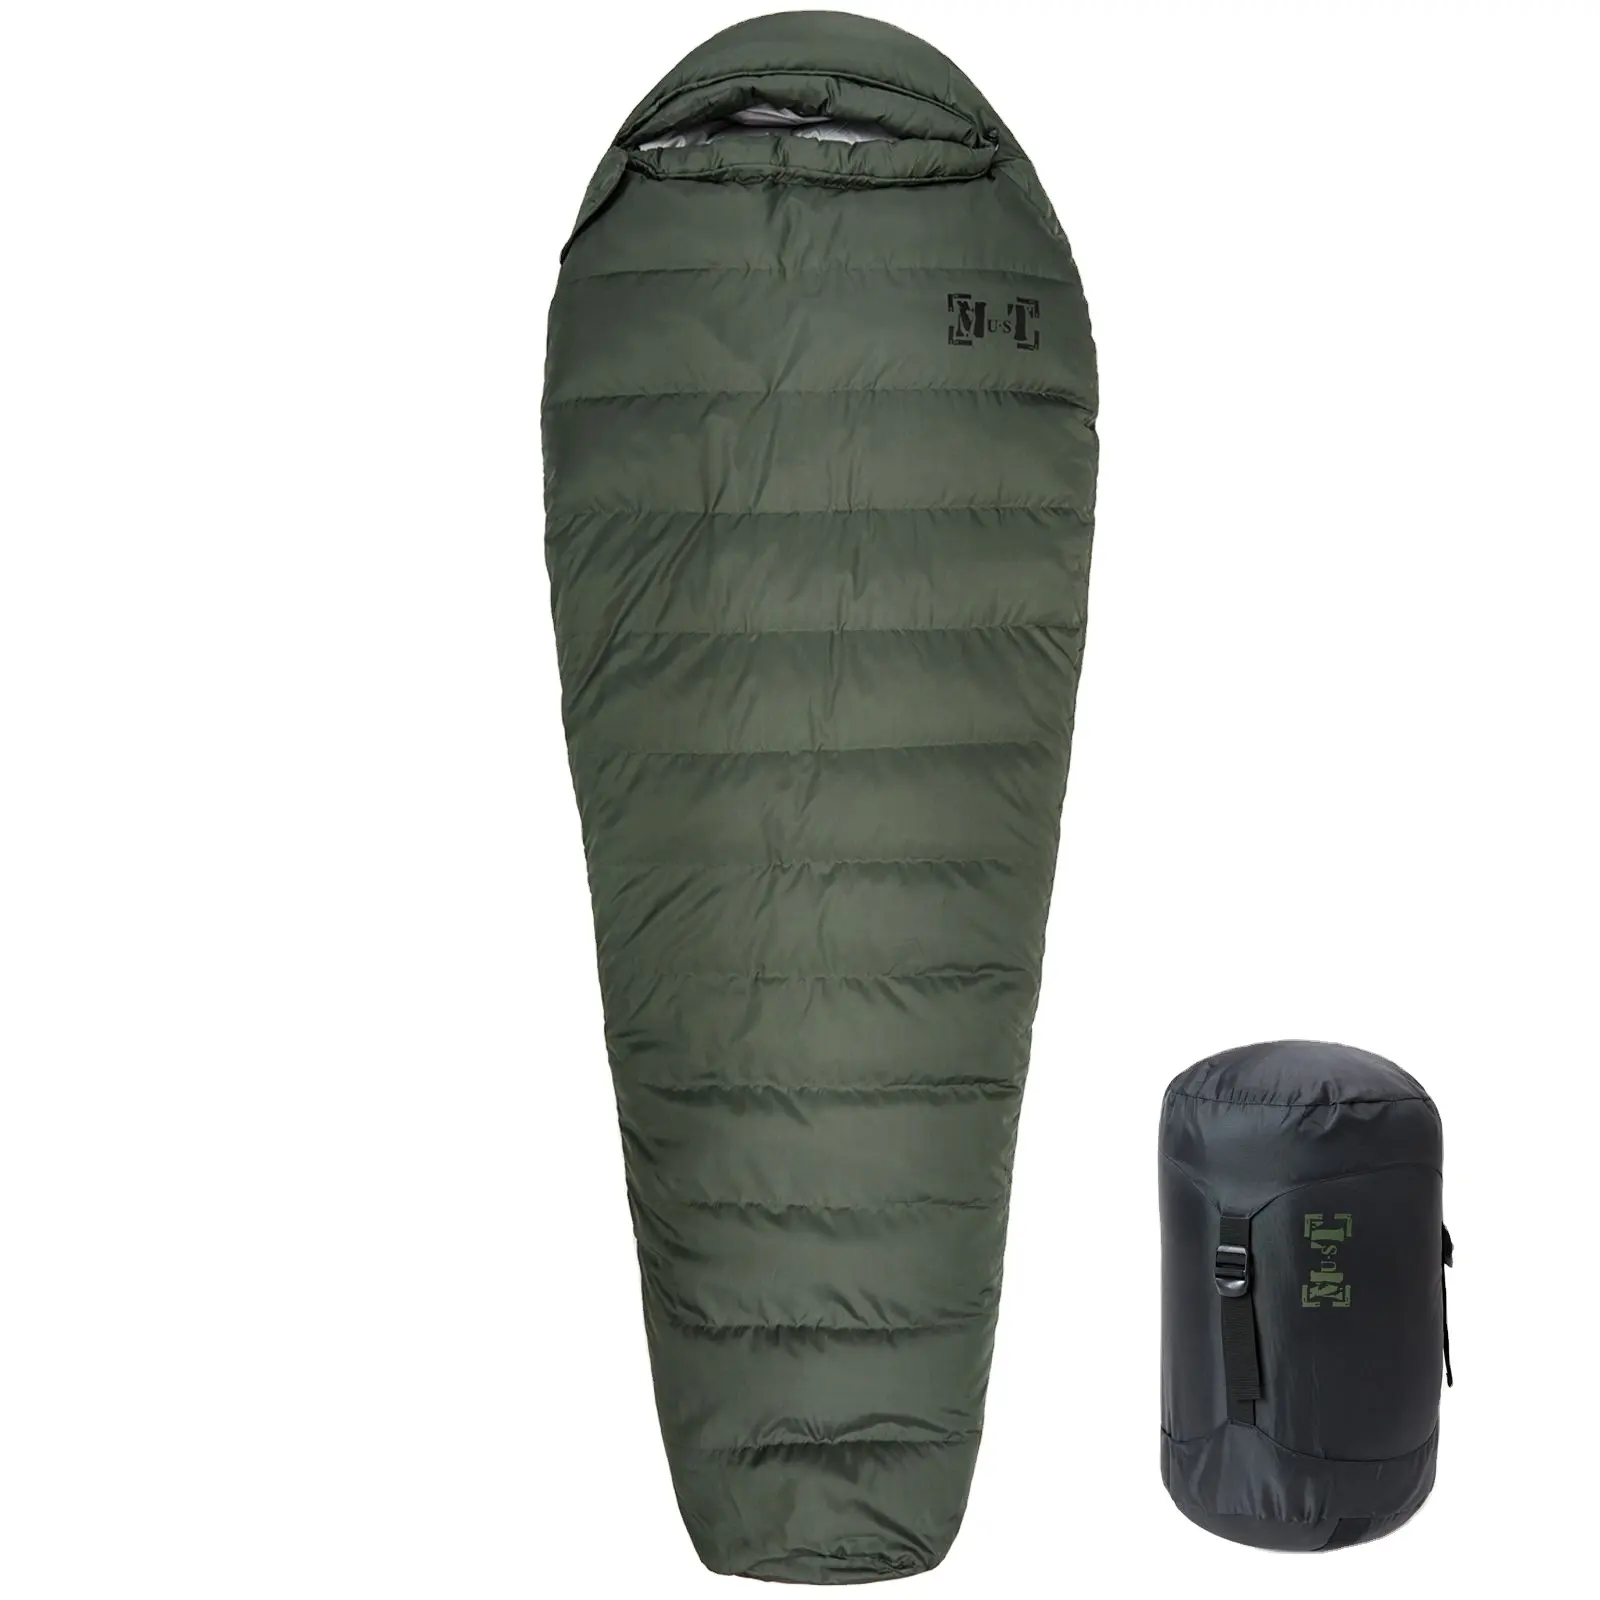 AKmaxレンジャーダウンミイラアンチエクストリームコールド寝袋ポータブルキャンプハイキング寝袋オリーブグリーン